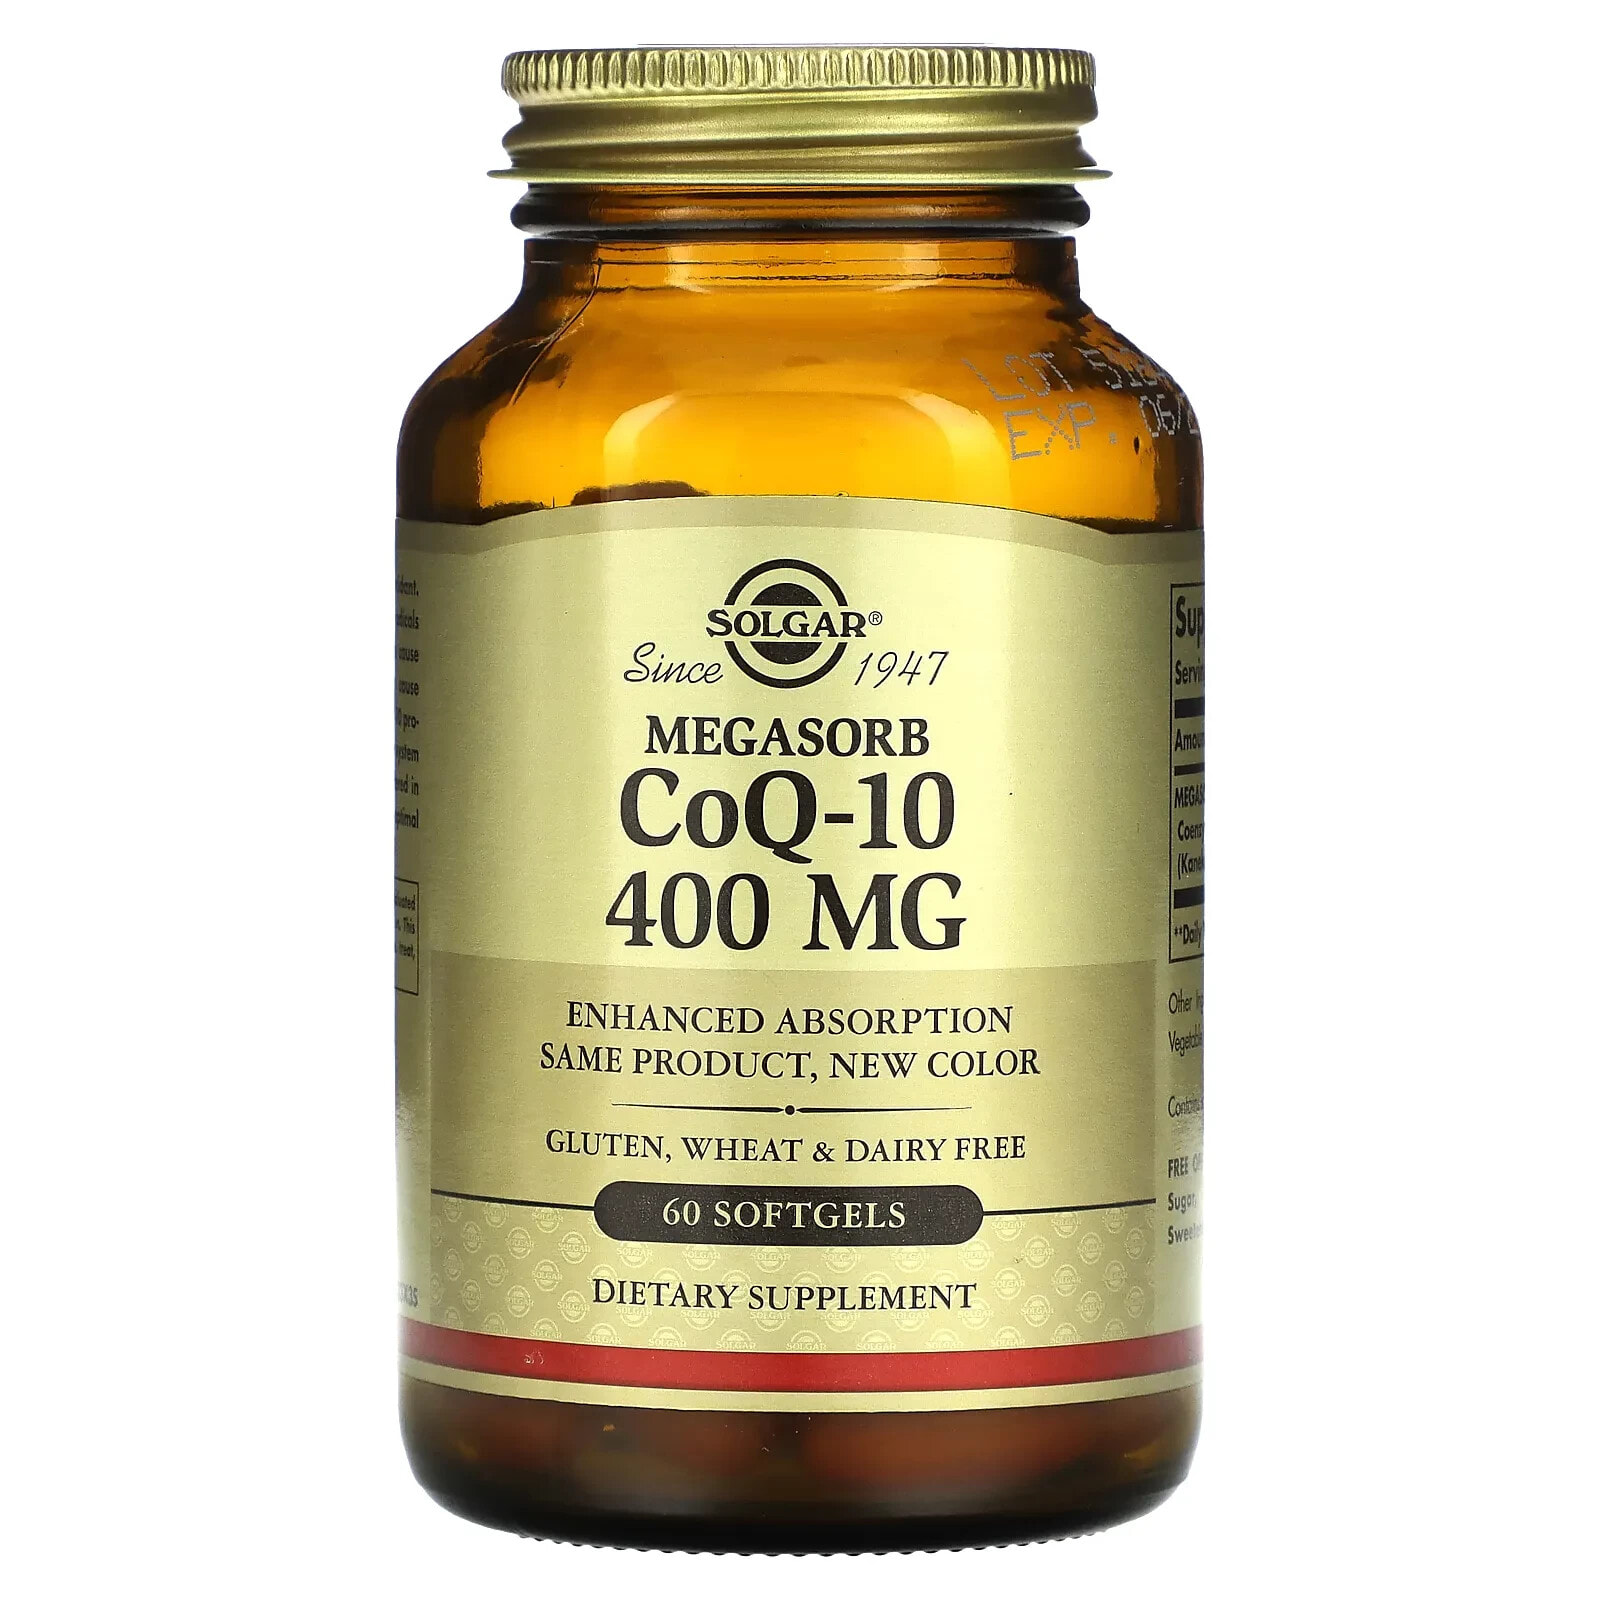 Solgar, Megasorb CoQ-10, 600 mg, 30 Softgels